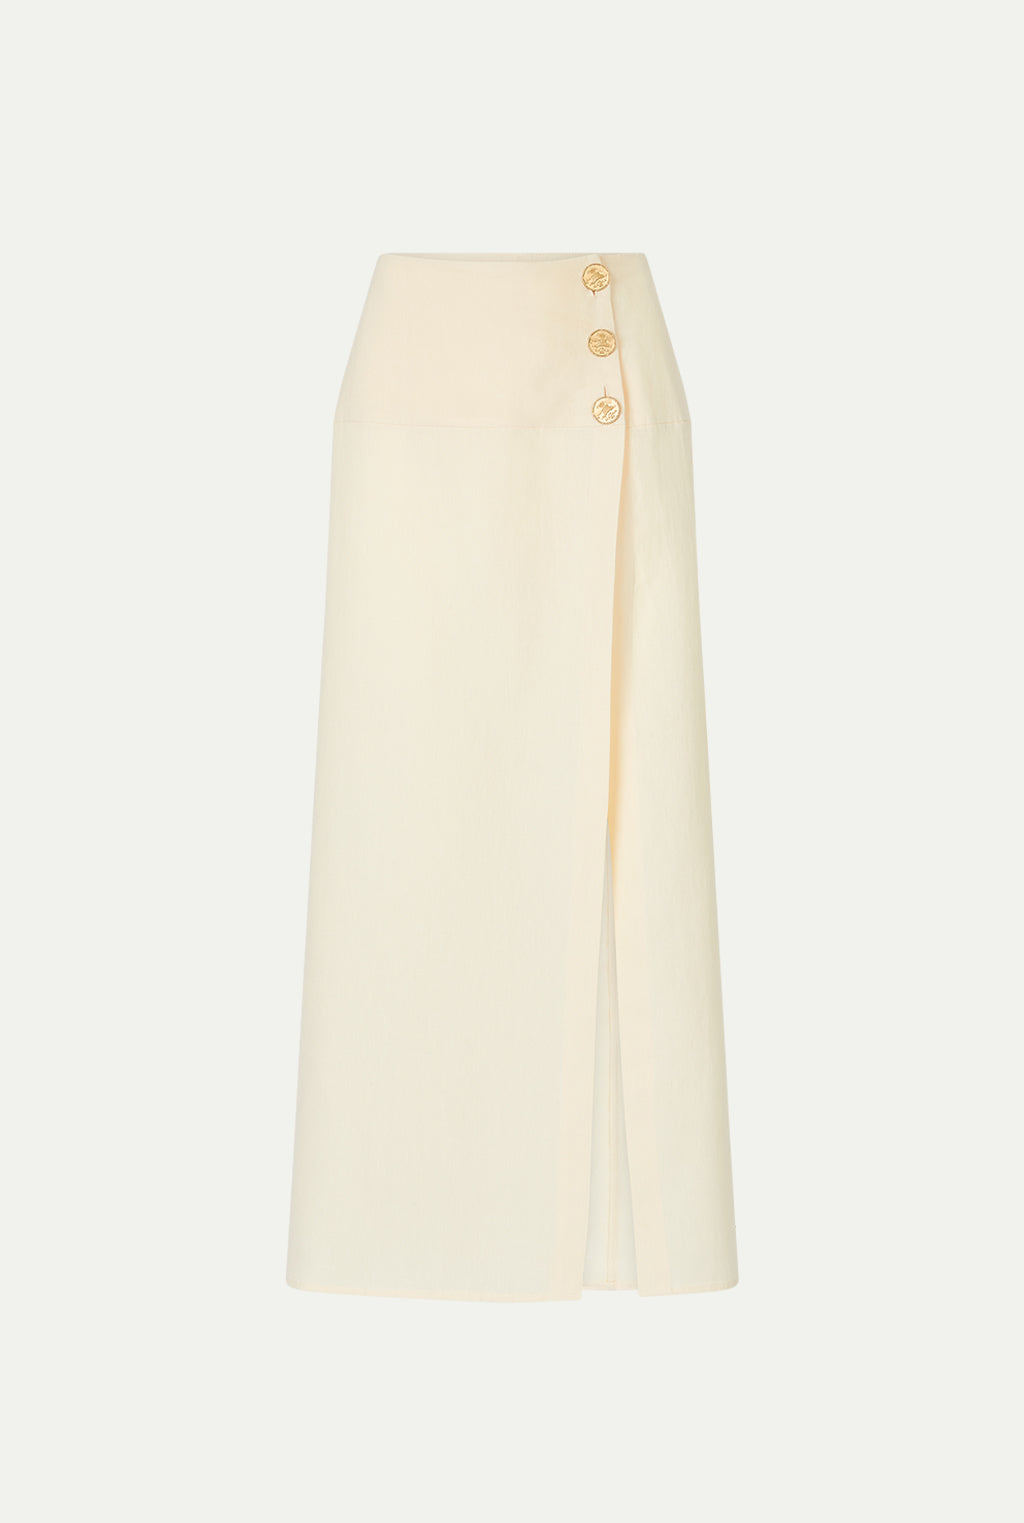 HAIFAL linen skirt